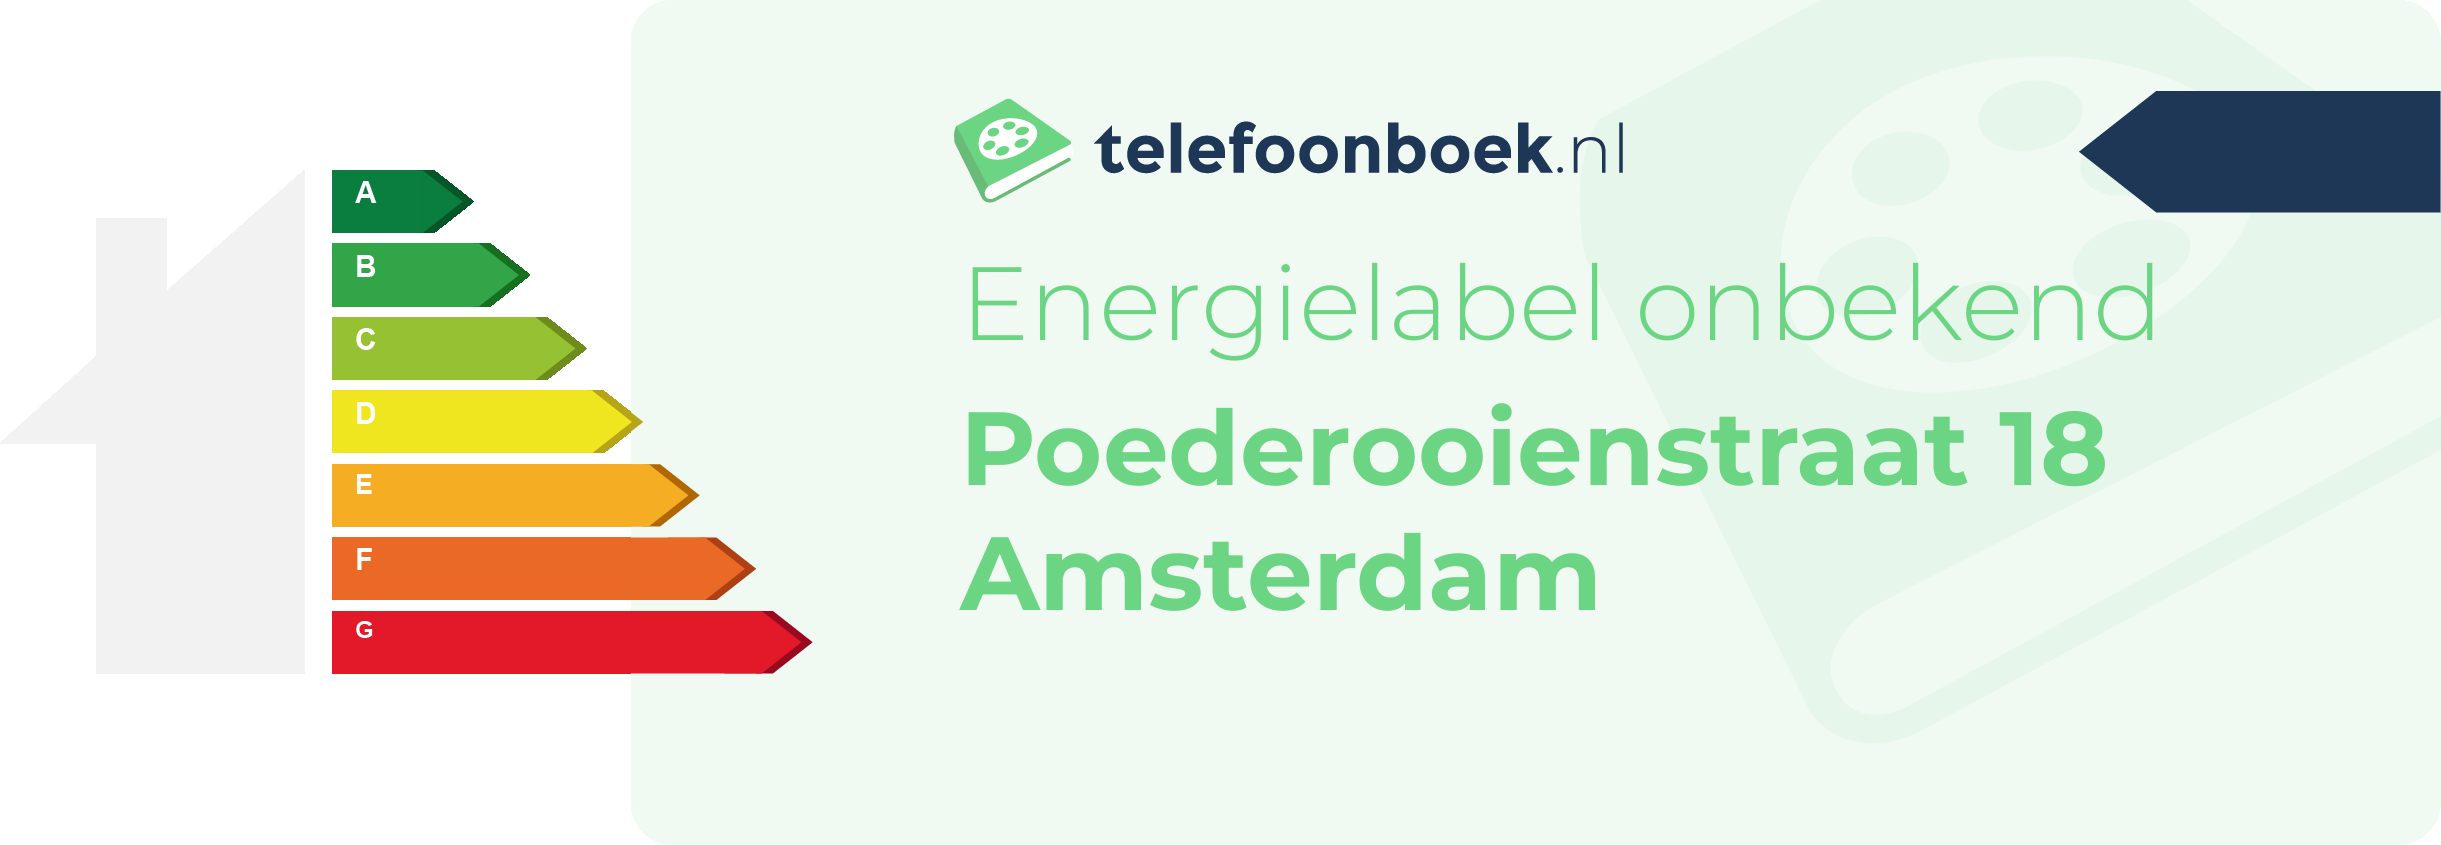 Energielabel Poederooienstraat 18 Amsterdam